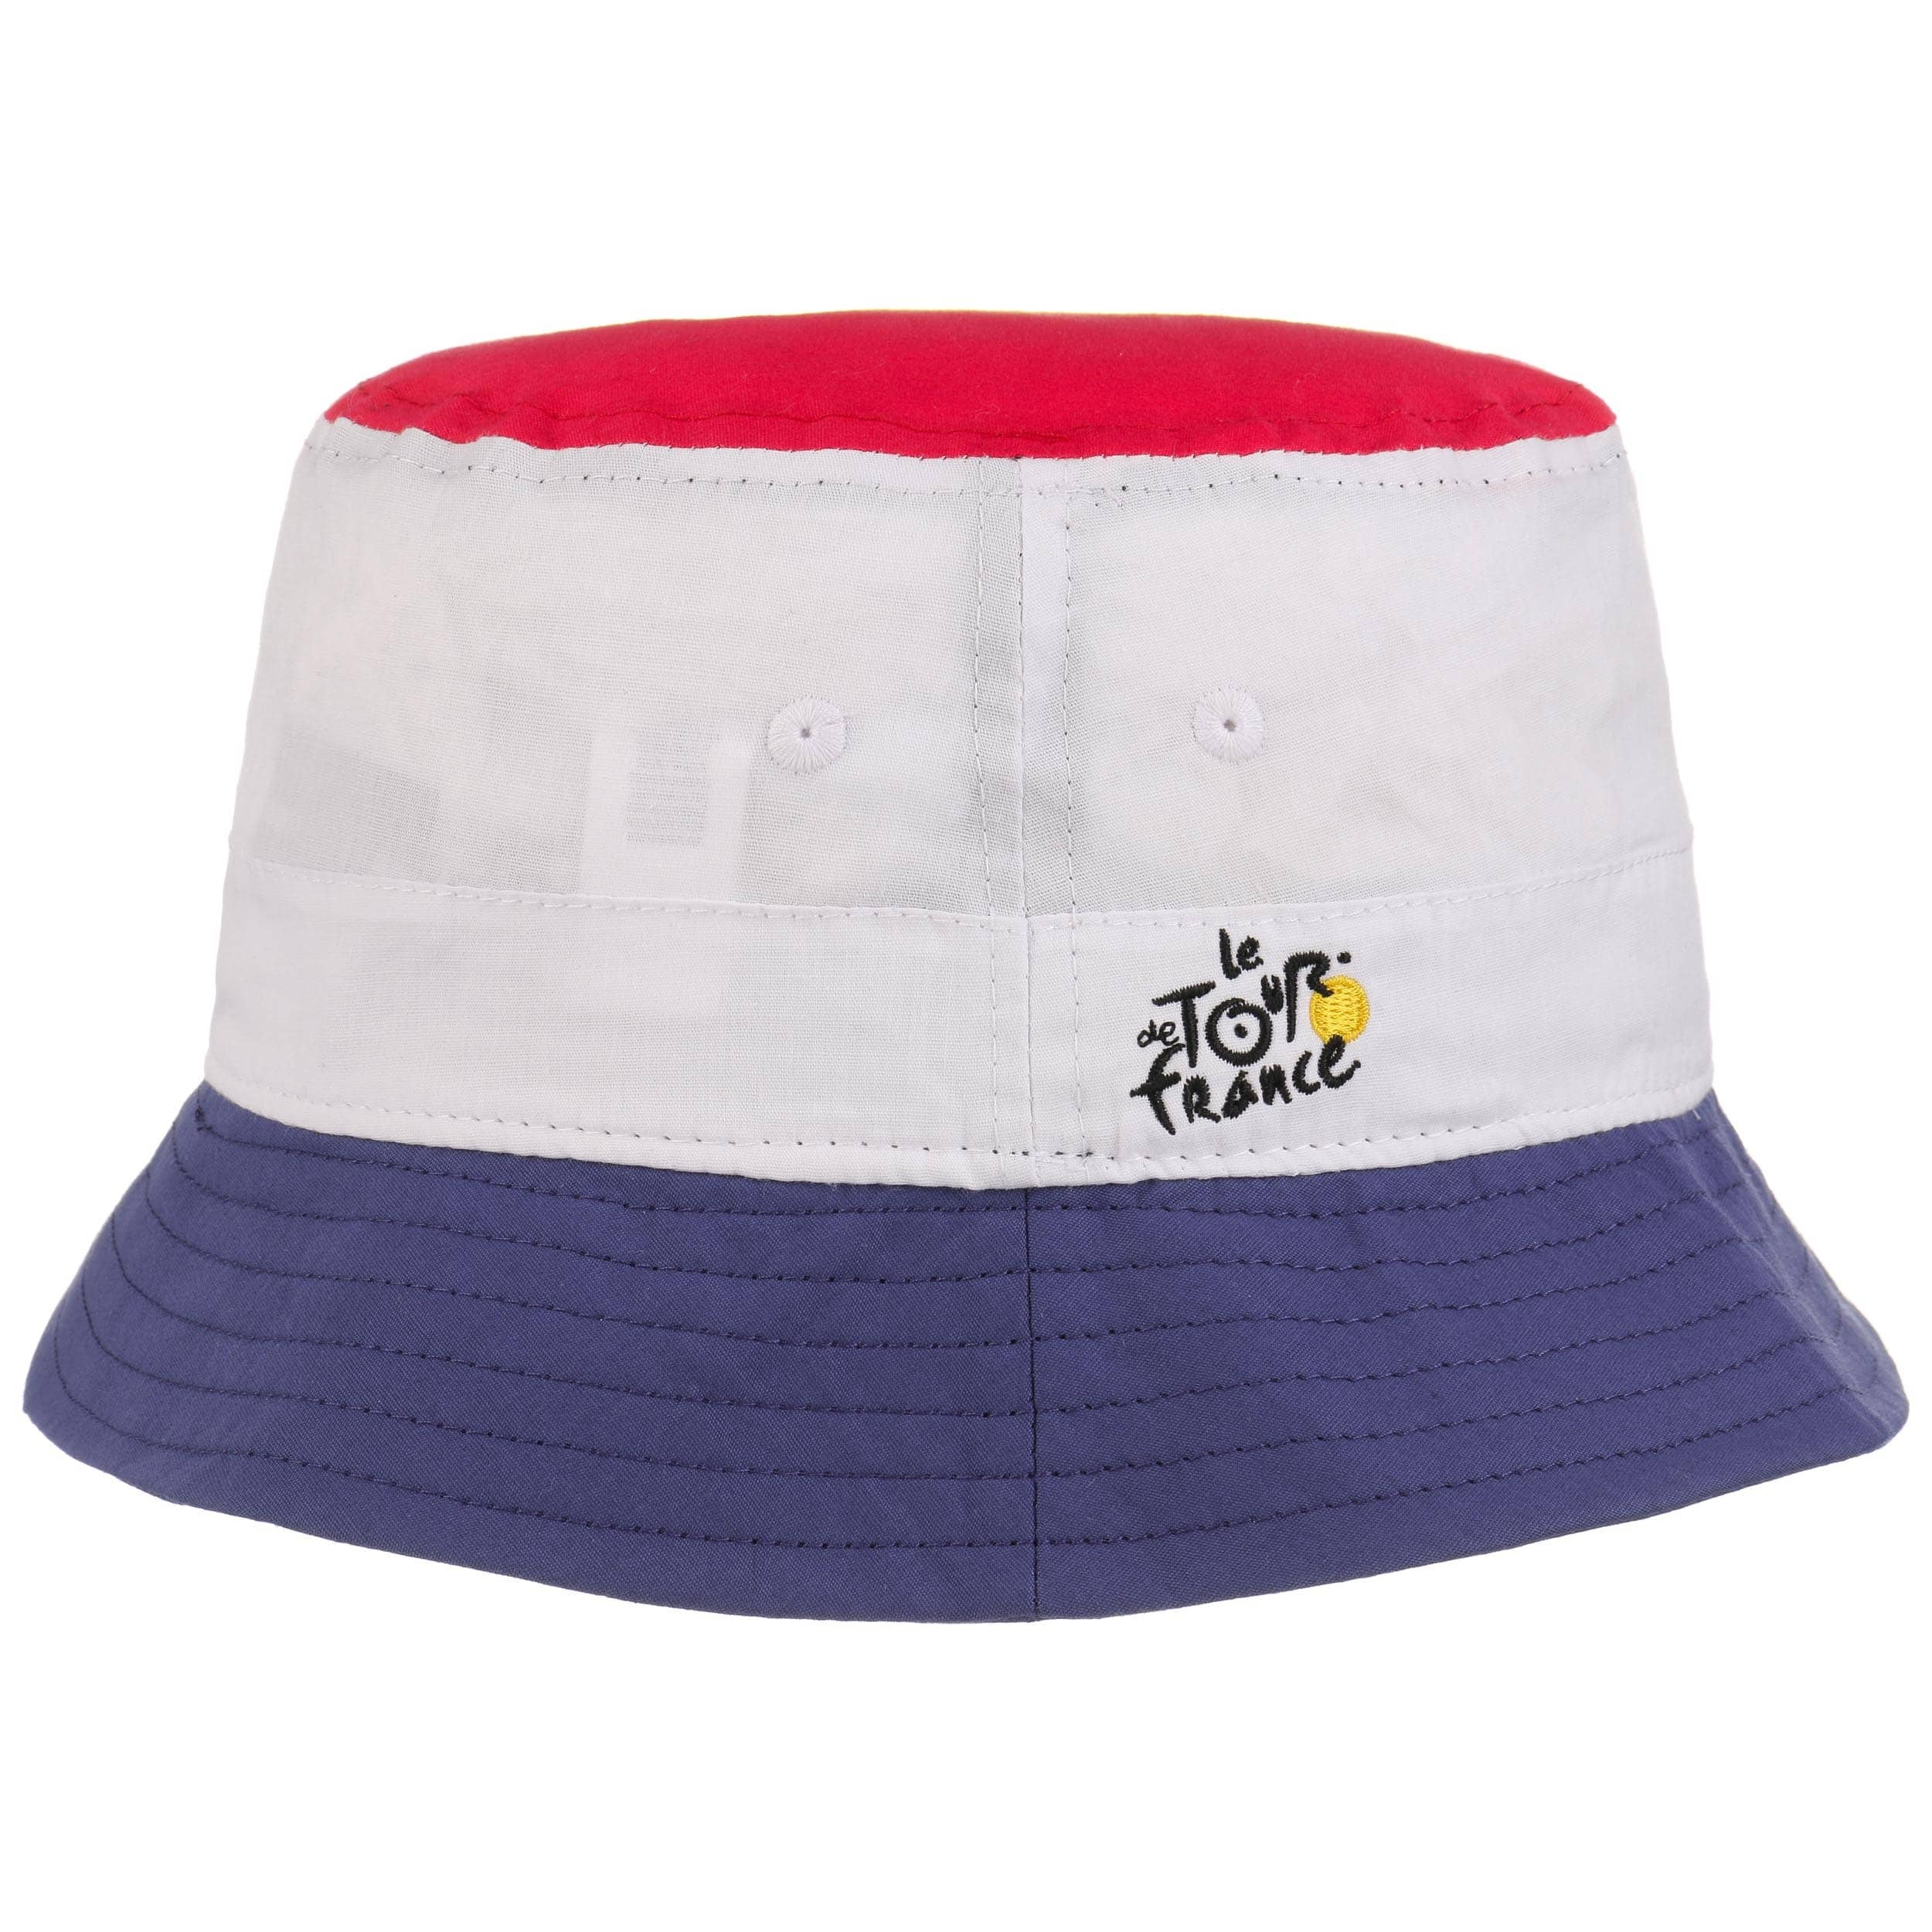 Tour De France Bucket Hat by New Era